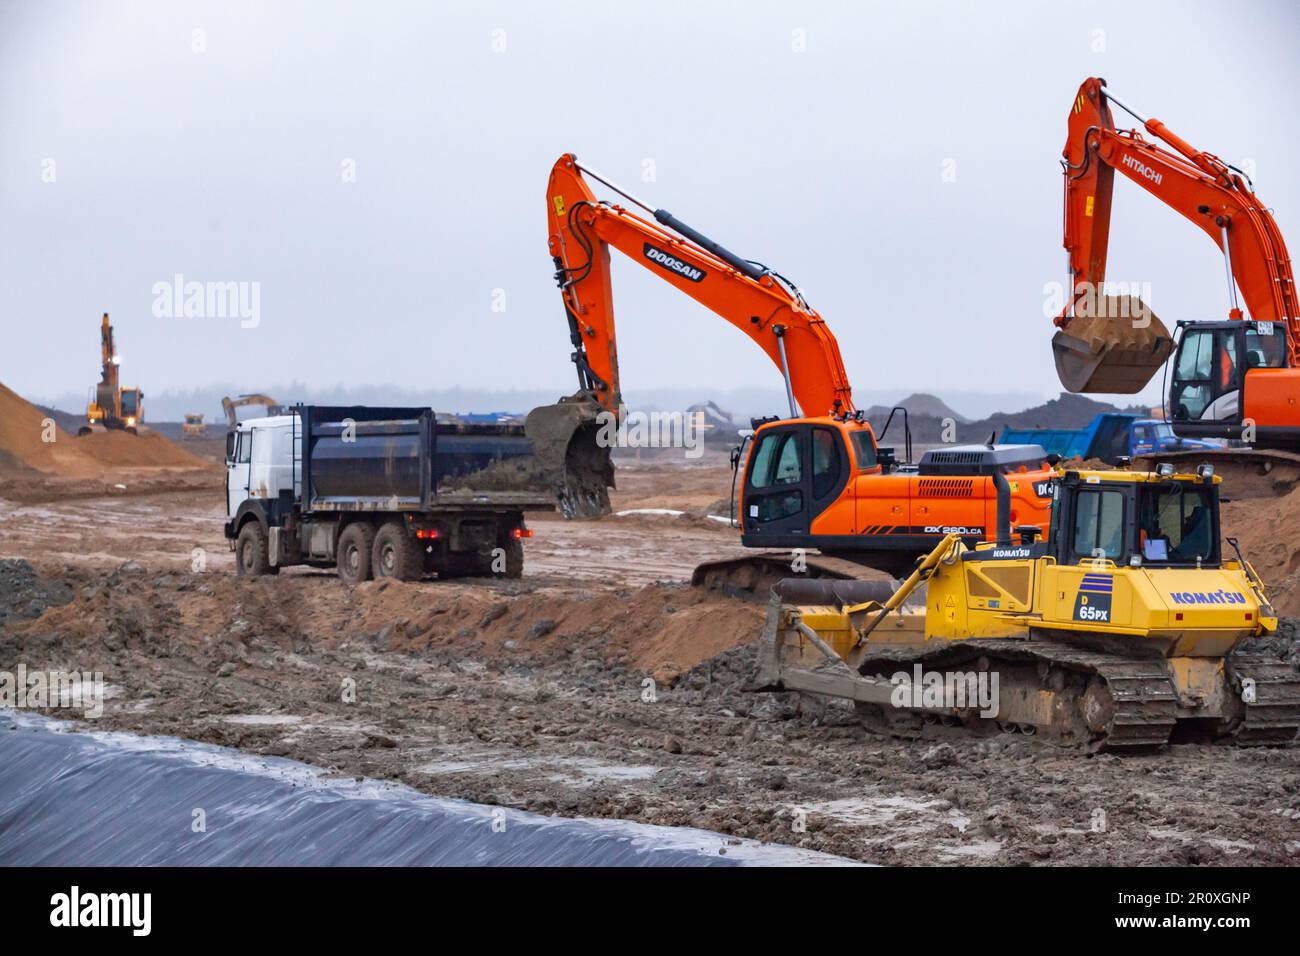 UST-Luga, Óblast de Leningrado, Rusia - 16 de noviembre de 2021: Excavadoras Doosan y Hitachi, topadora Komatsu y camión volquete en obra. Día lluvioso, d Foto de stock